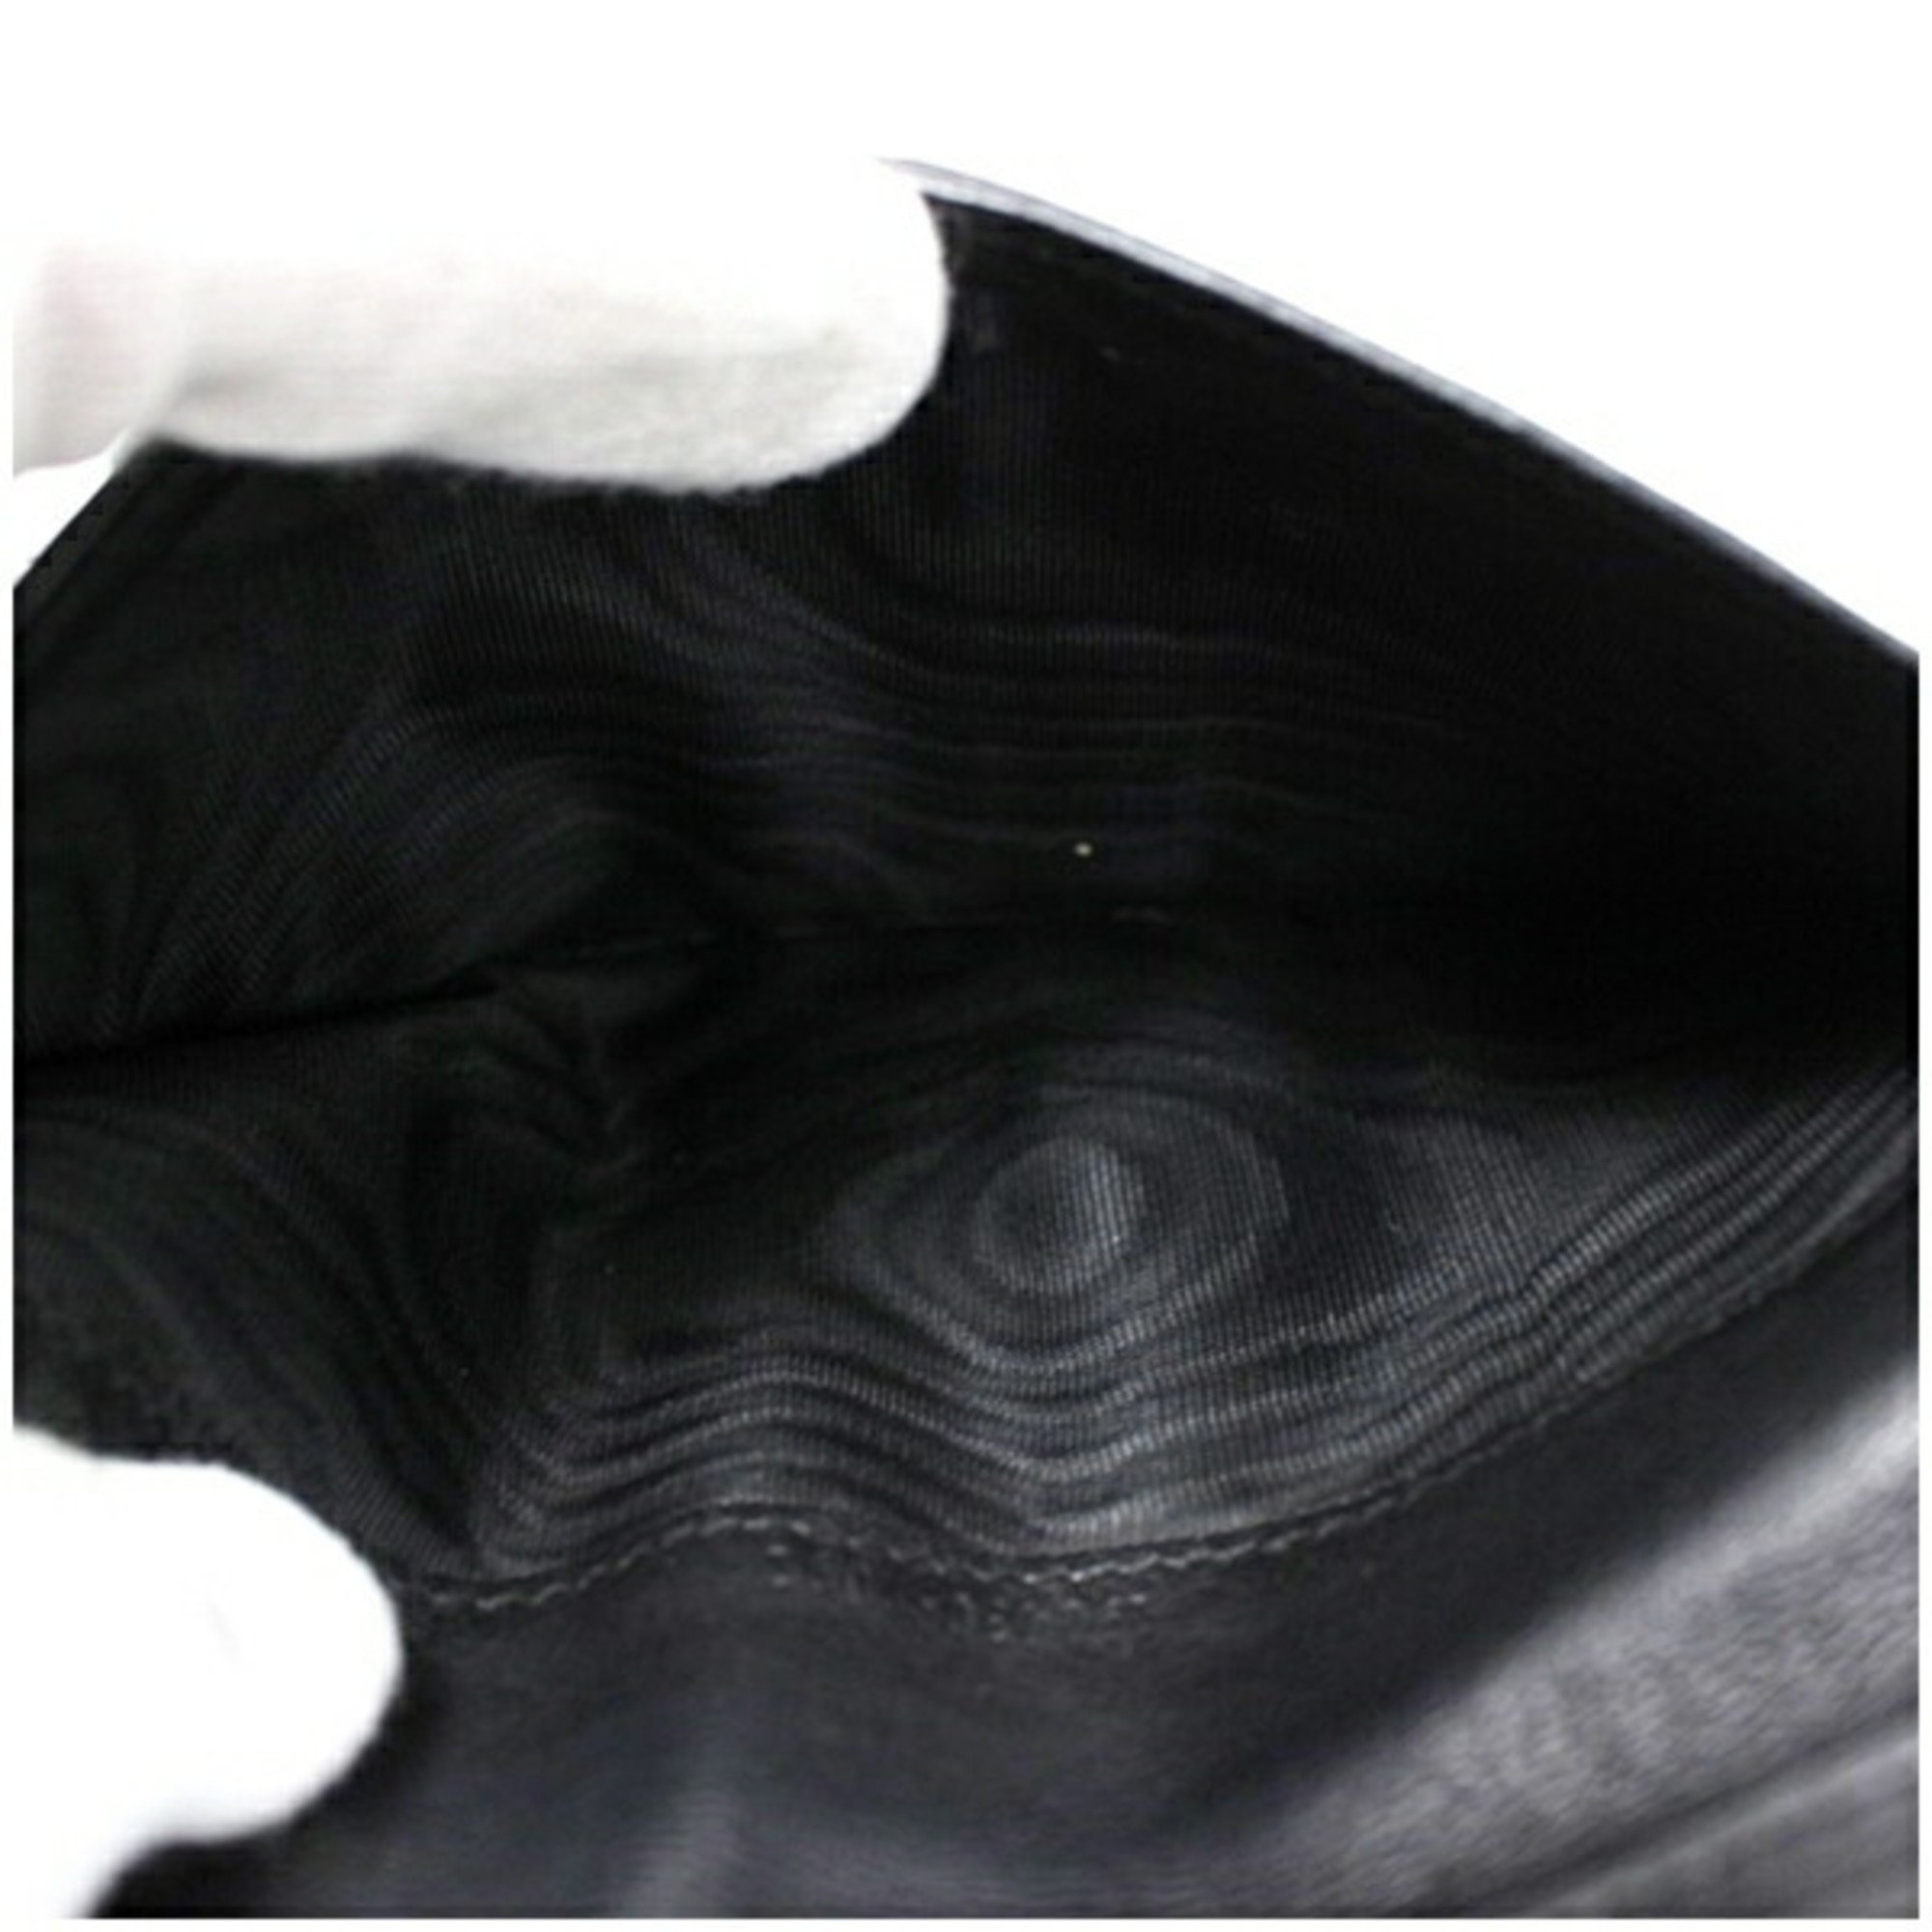 Gucci Long Wallet Leather Black 190430-2091 GUCCI Men's Bi-fold